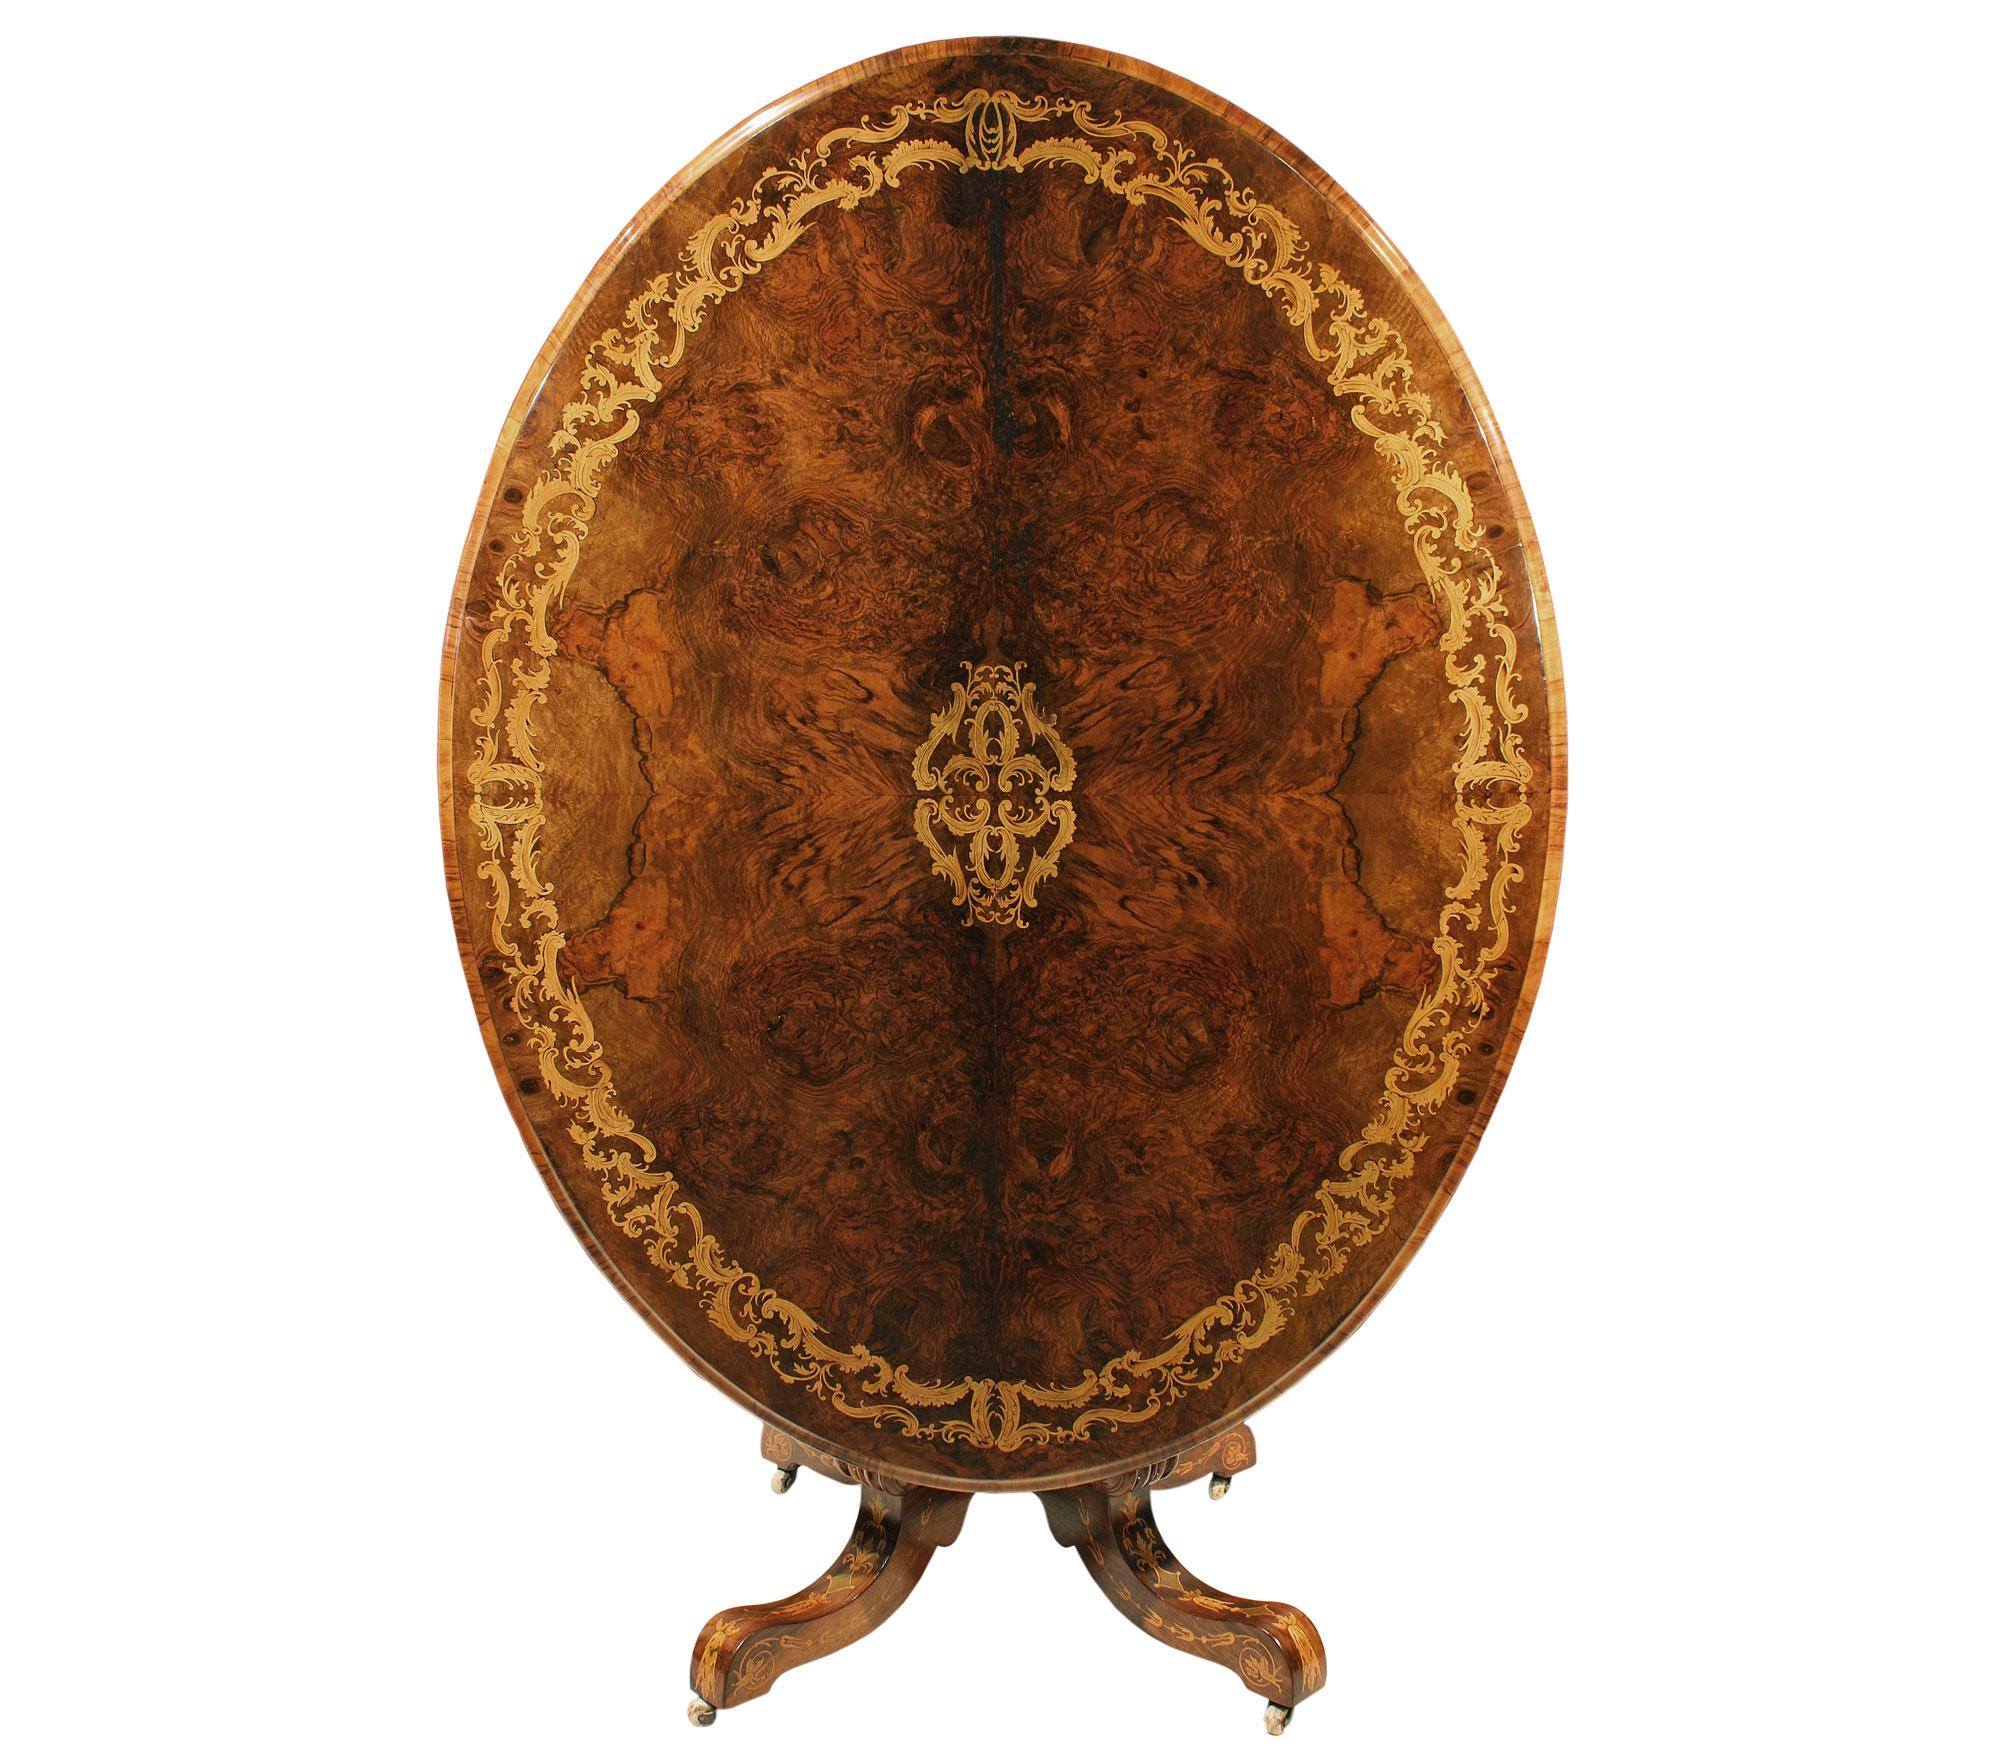 Table centrale ovale à plateau basculant, très décorative et de grande taille, datant du XIXe siècle, en divers noyers et bois exotiques. La table est surélevée par les roulettes en porcelaine d'origine, avec quatre supports à volutes en C reliés